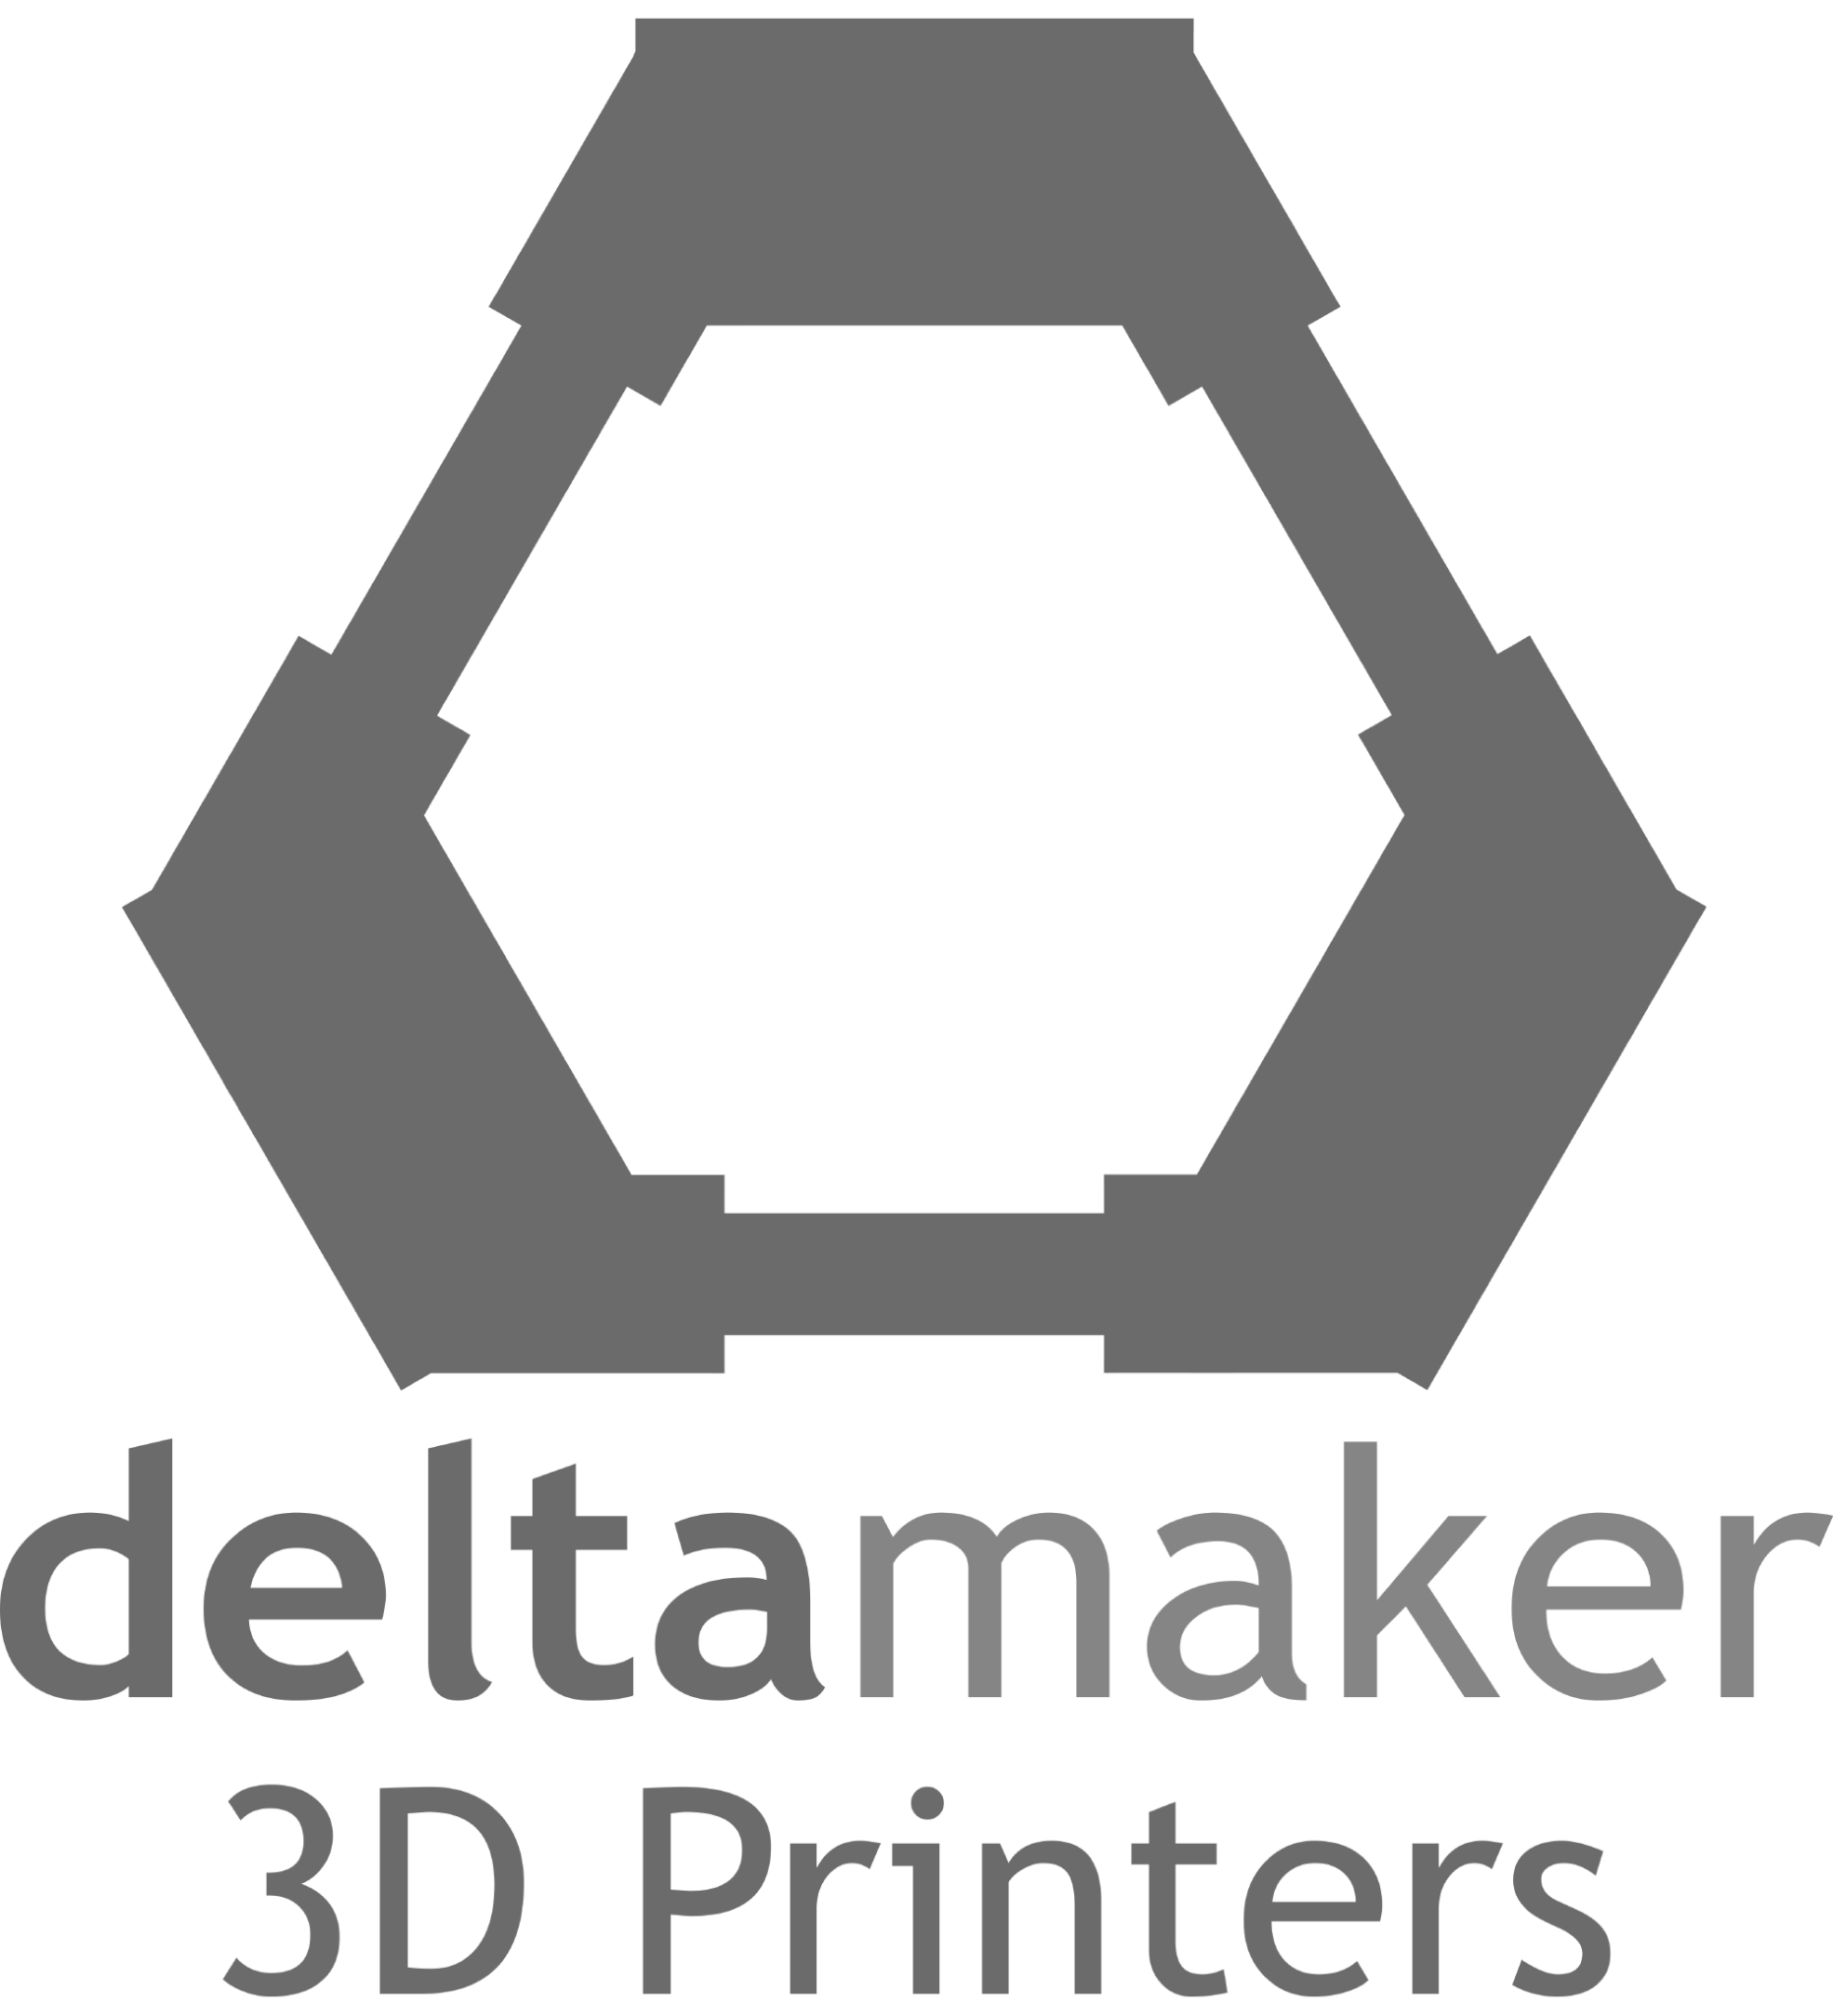 DeltaMaker 3D Printers logo